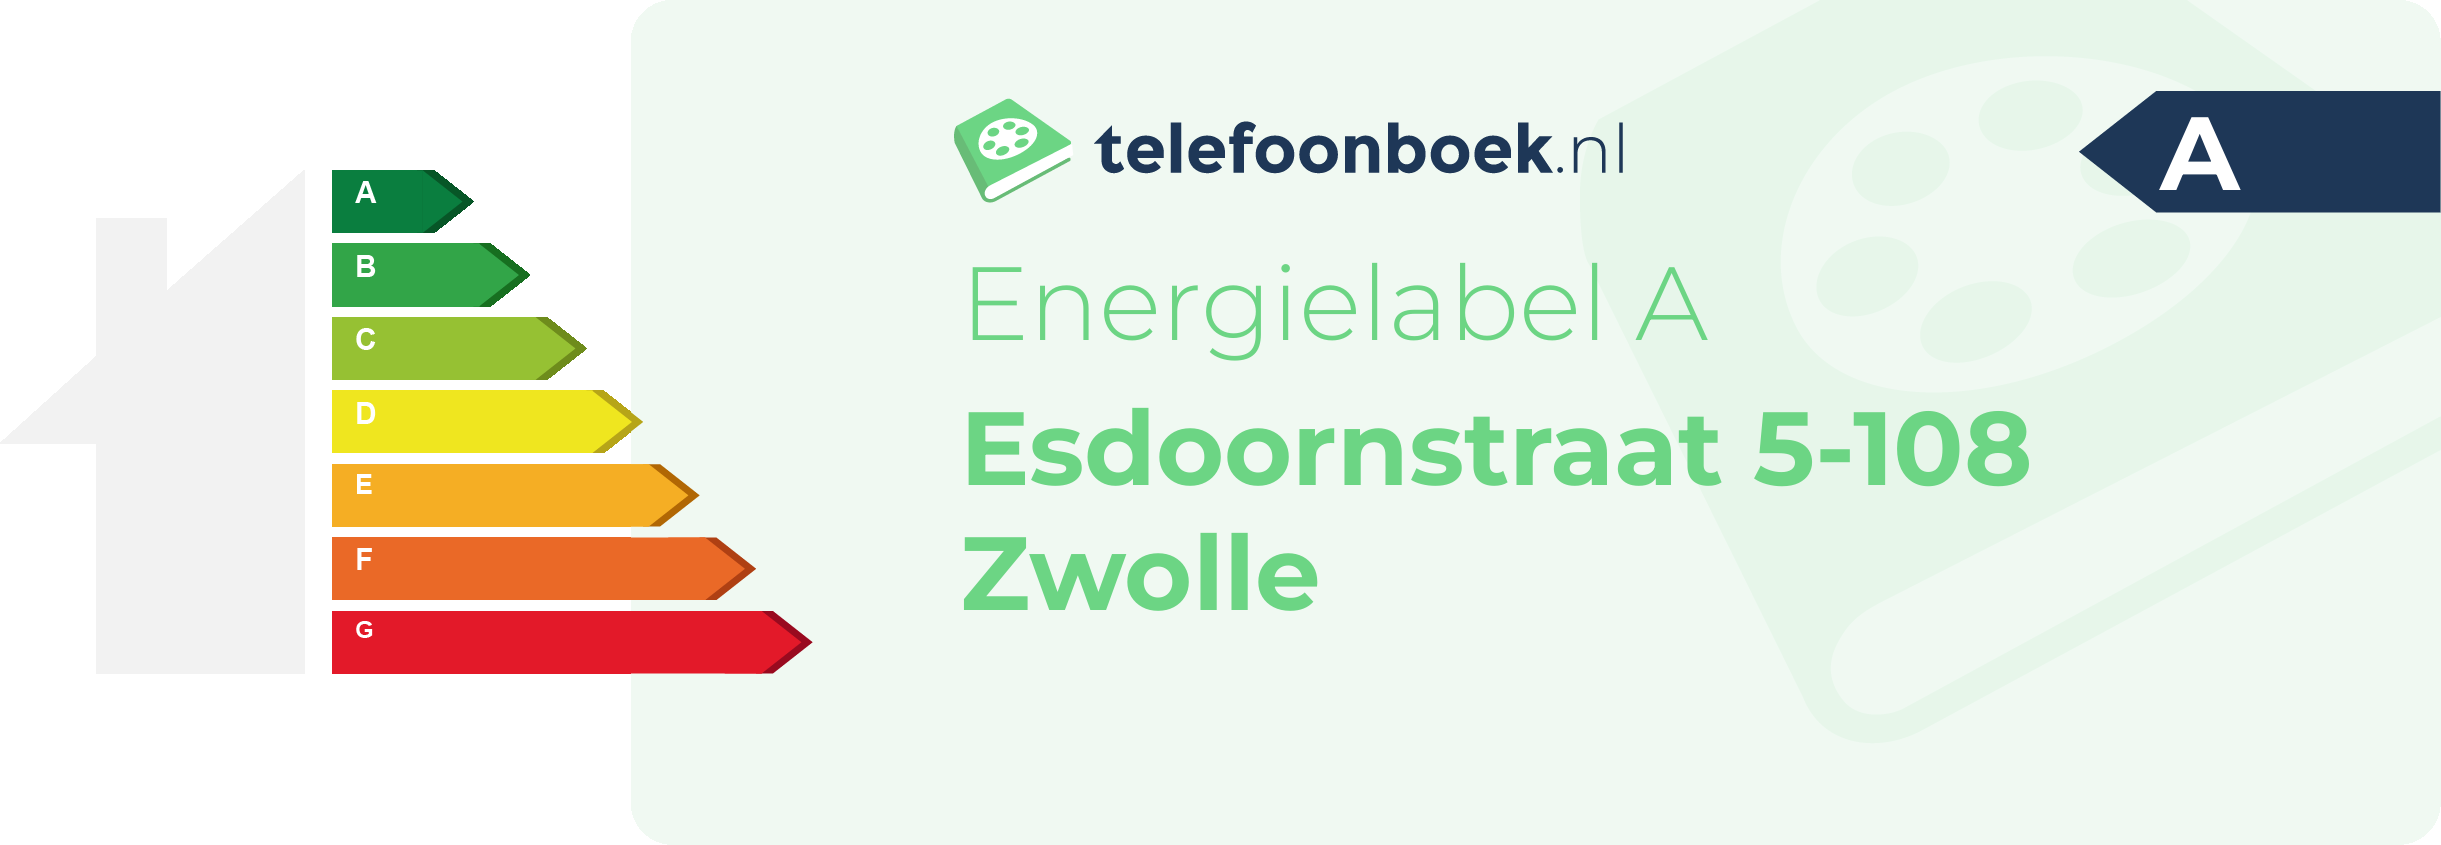 Energielabel Esdoornstraat 5-108 Zwolle